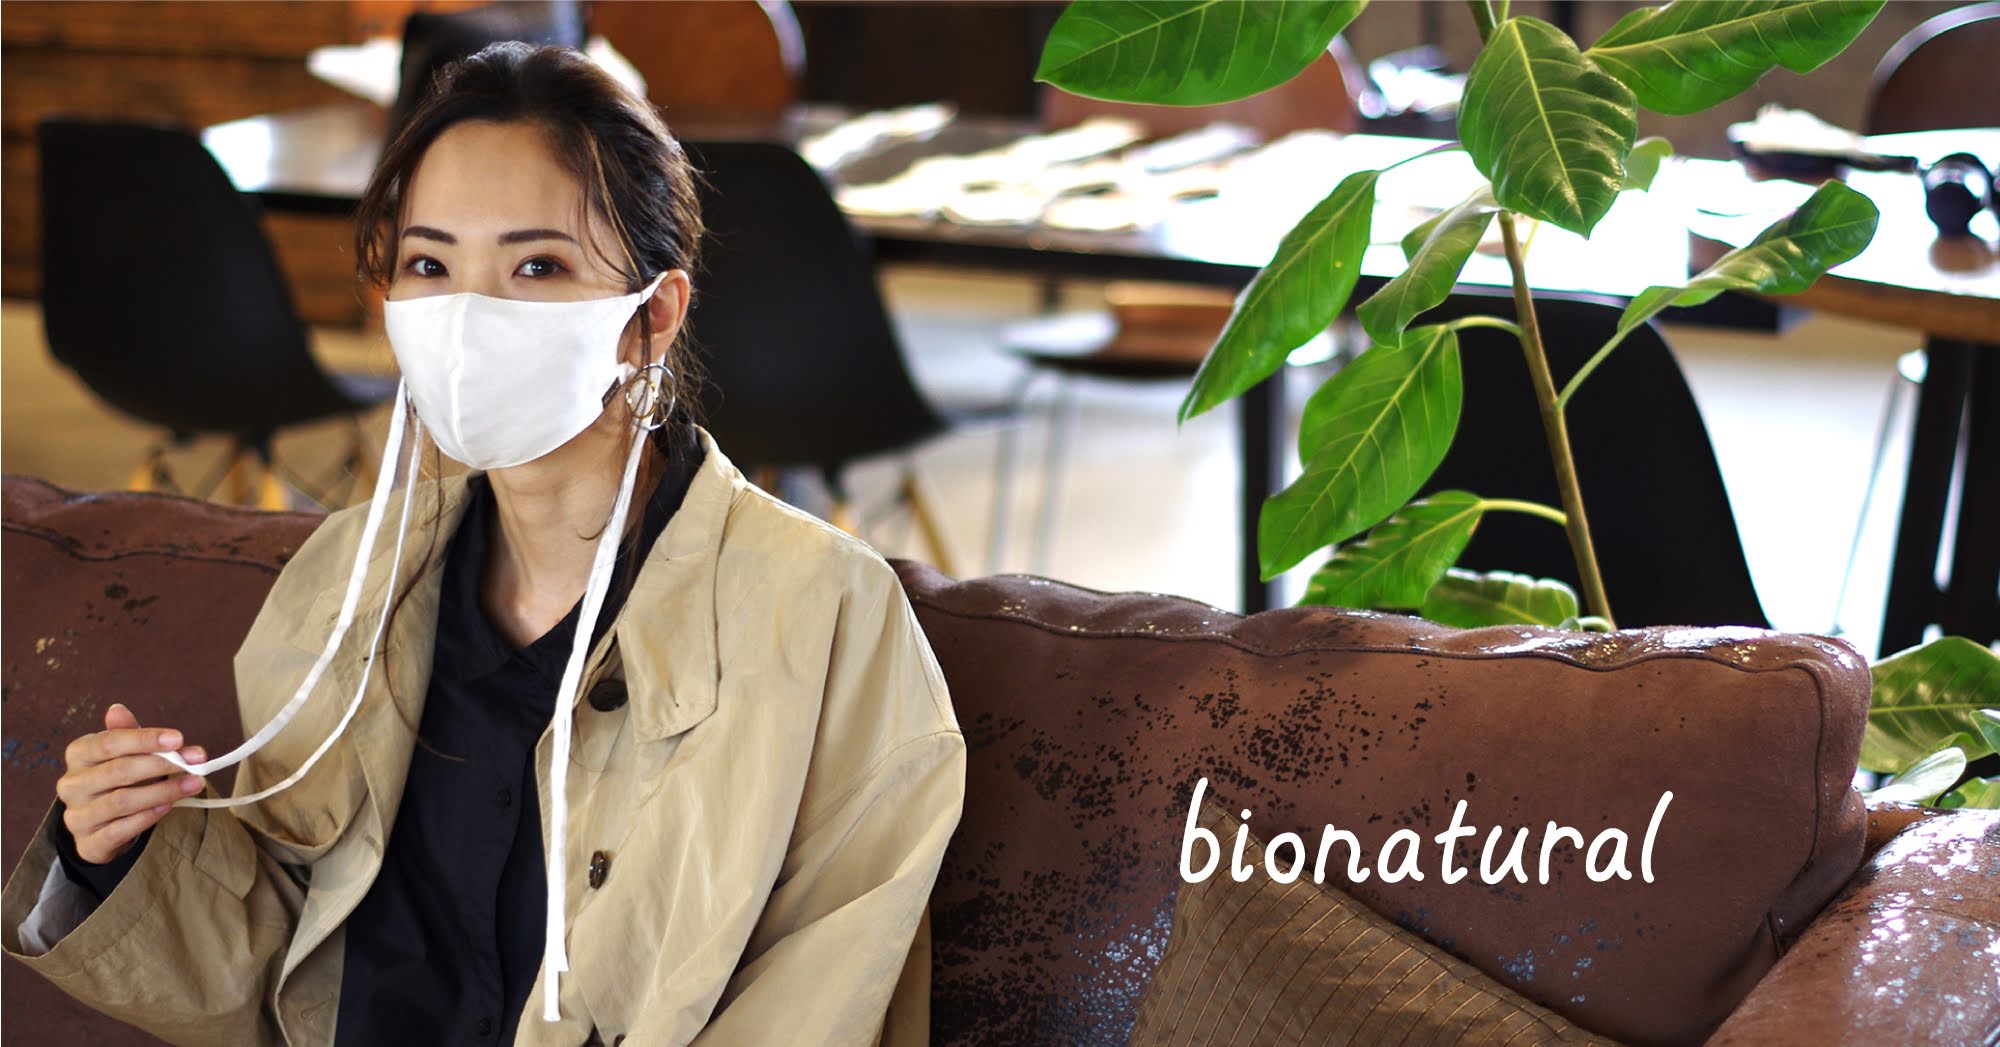 【再予約開始のお知らせ】極上シルクの天然素材マスク「bionatural」